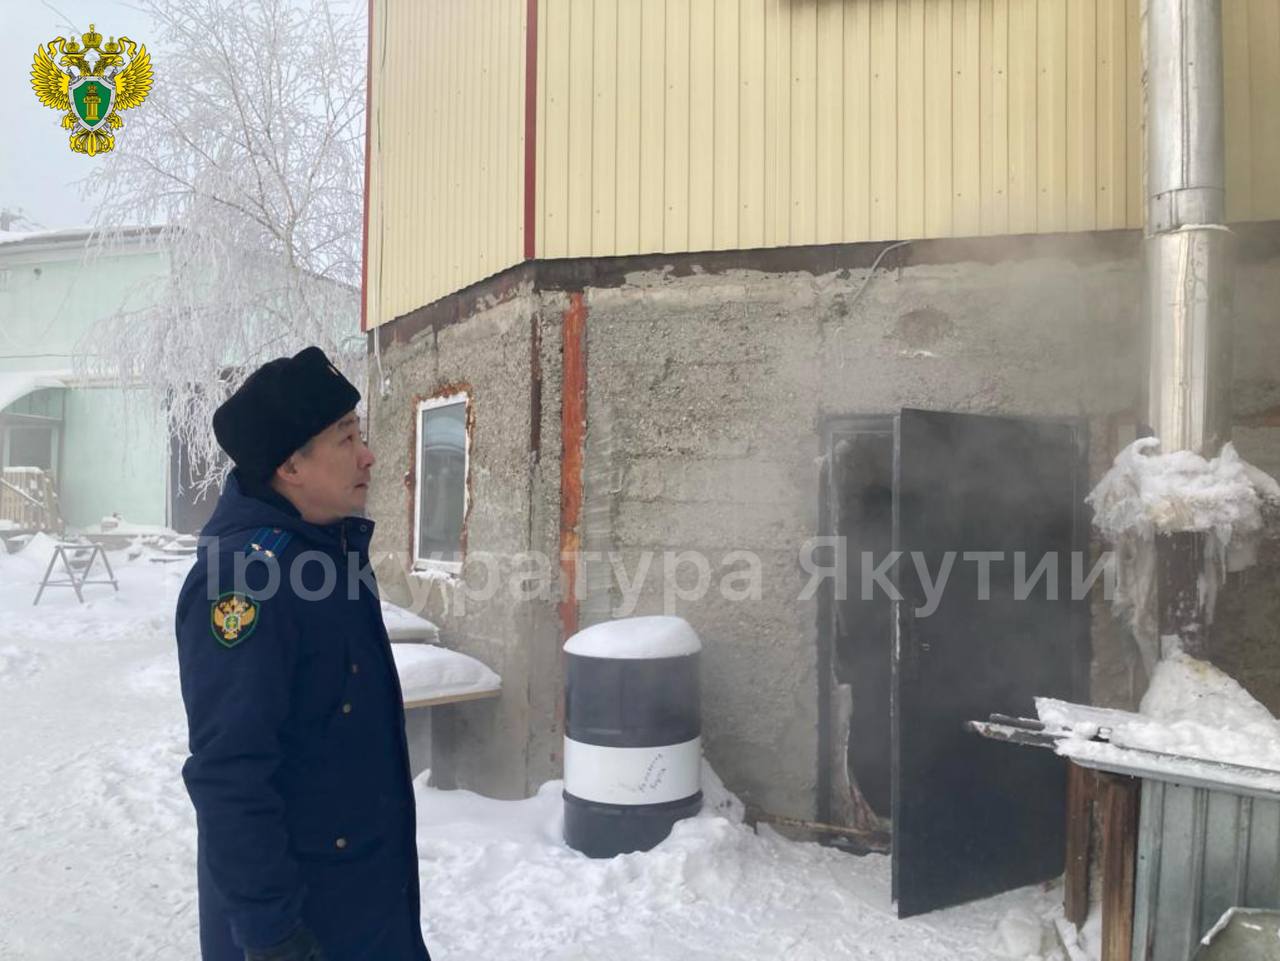 Проверку по сообщению об отравлении угарным газом граждан организовали в Якутске